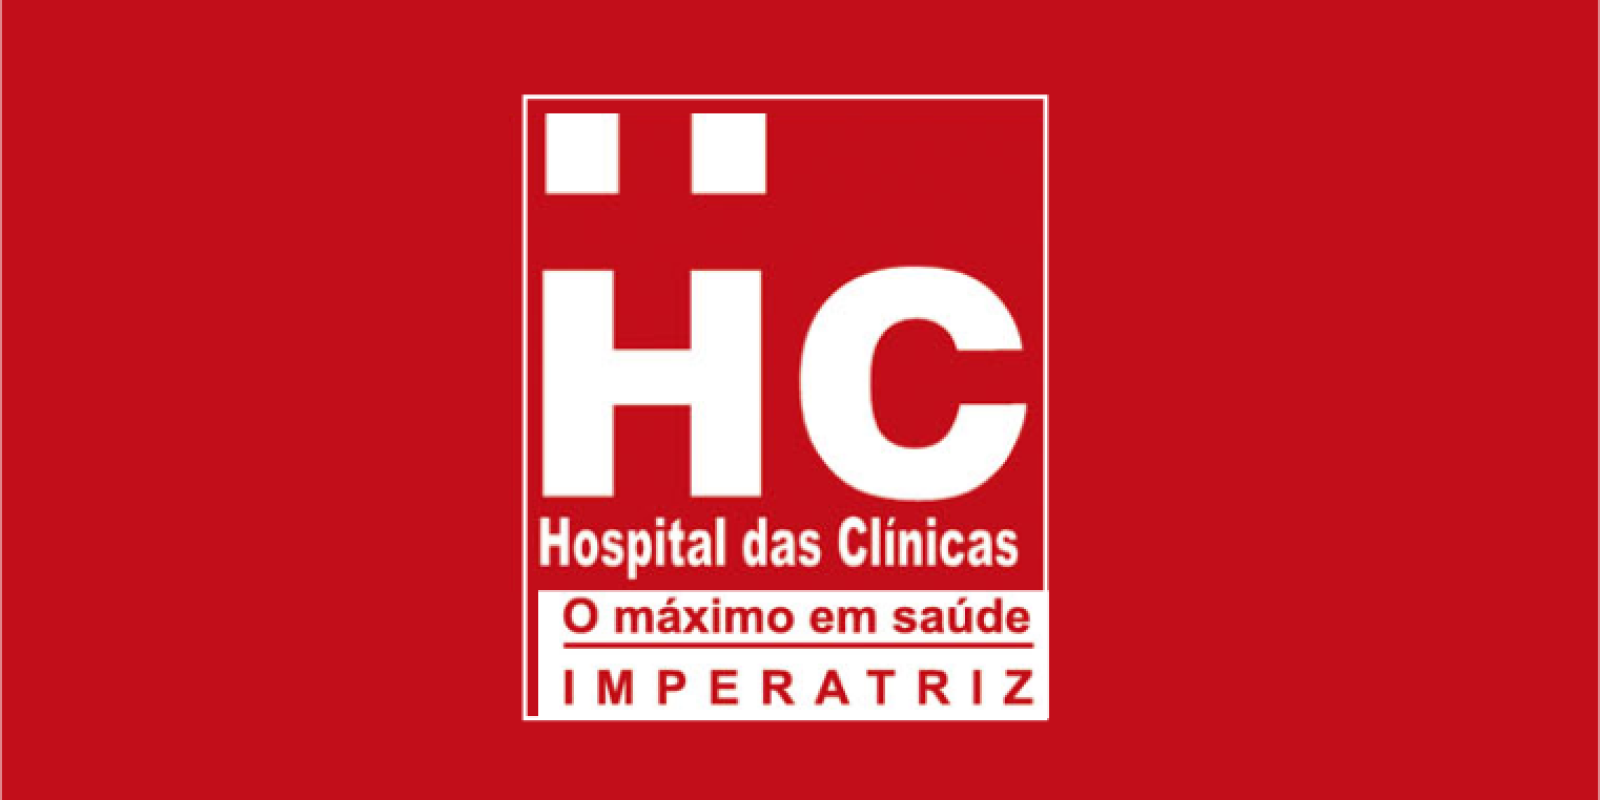 HC - Hospital das Clínicas